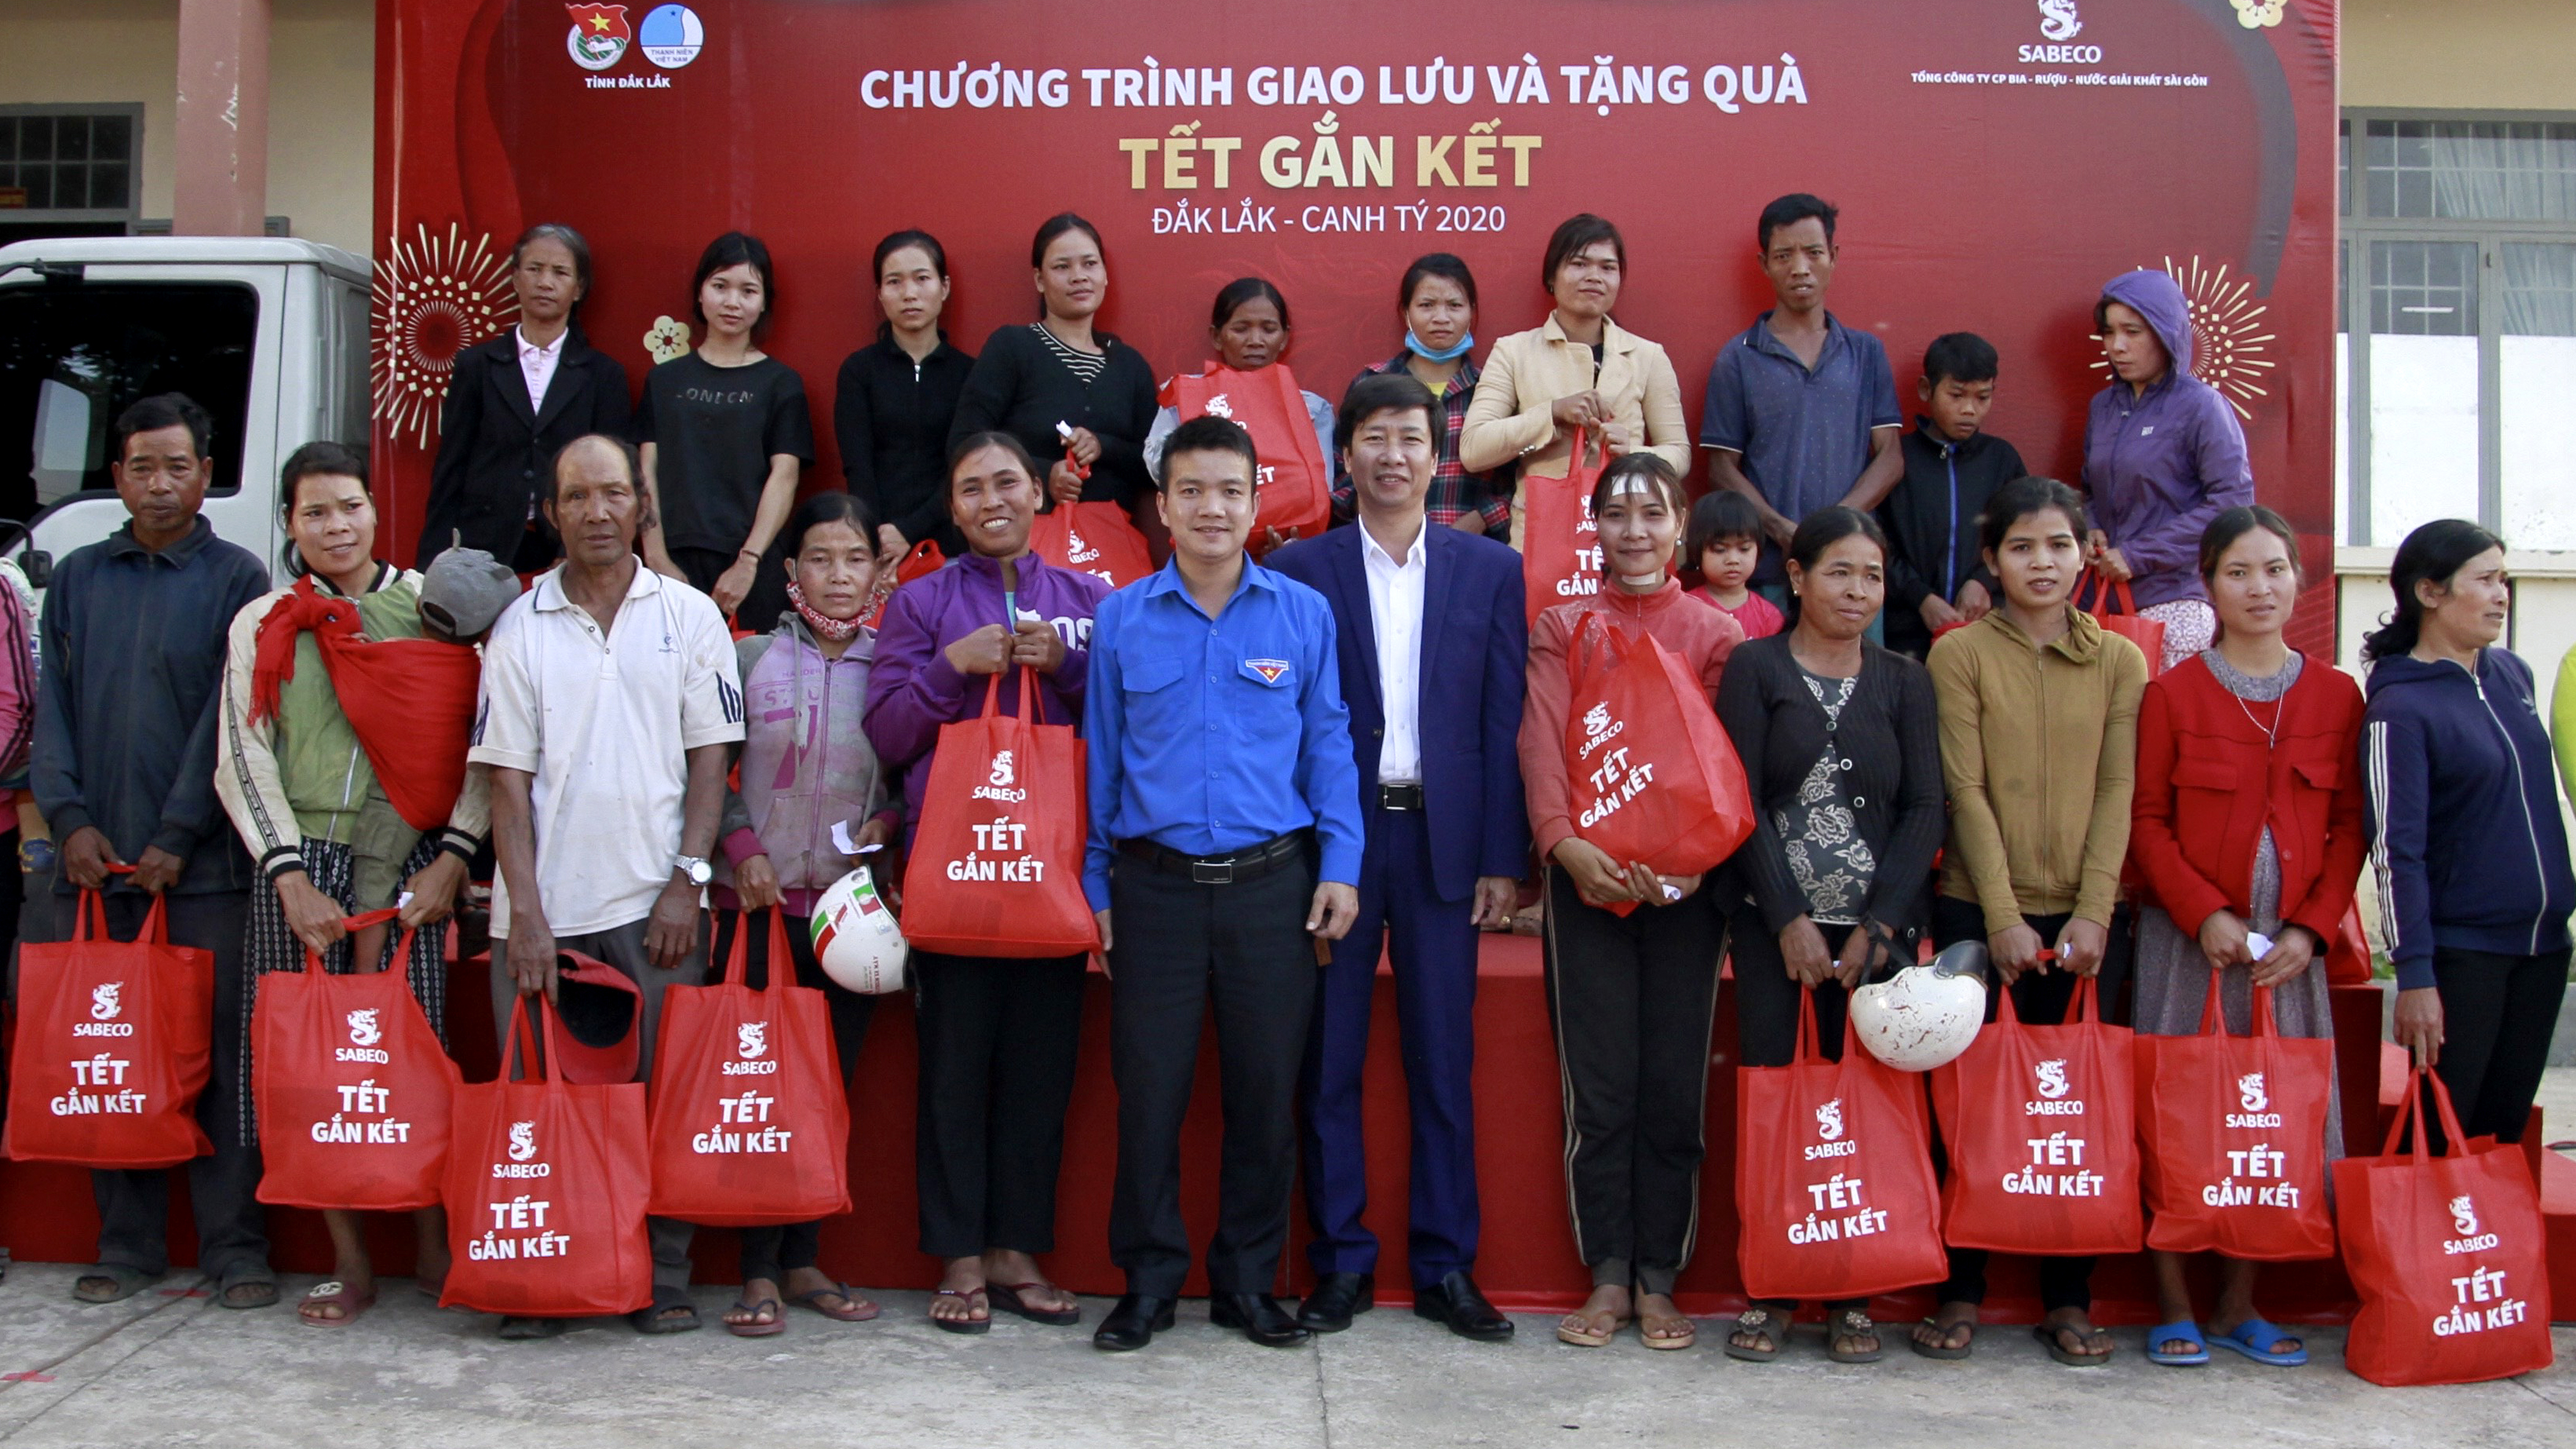 Tỉnh Đoàn phối hợp với Tổng Công ty Bia rượu nước giải khát Sài Gòn trao 600 suất quà Tết cho các gia đình có hoàn cảnh khó khăn